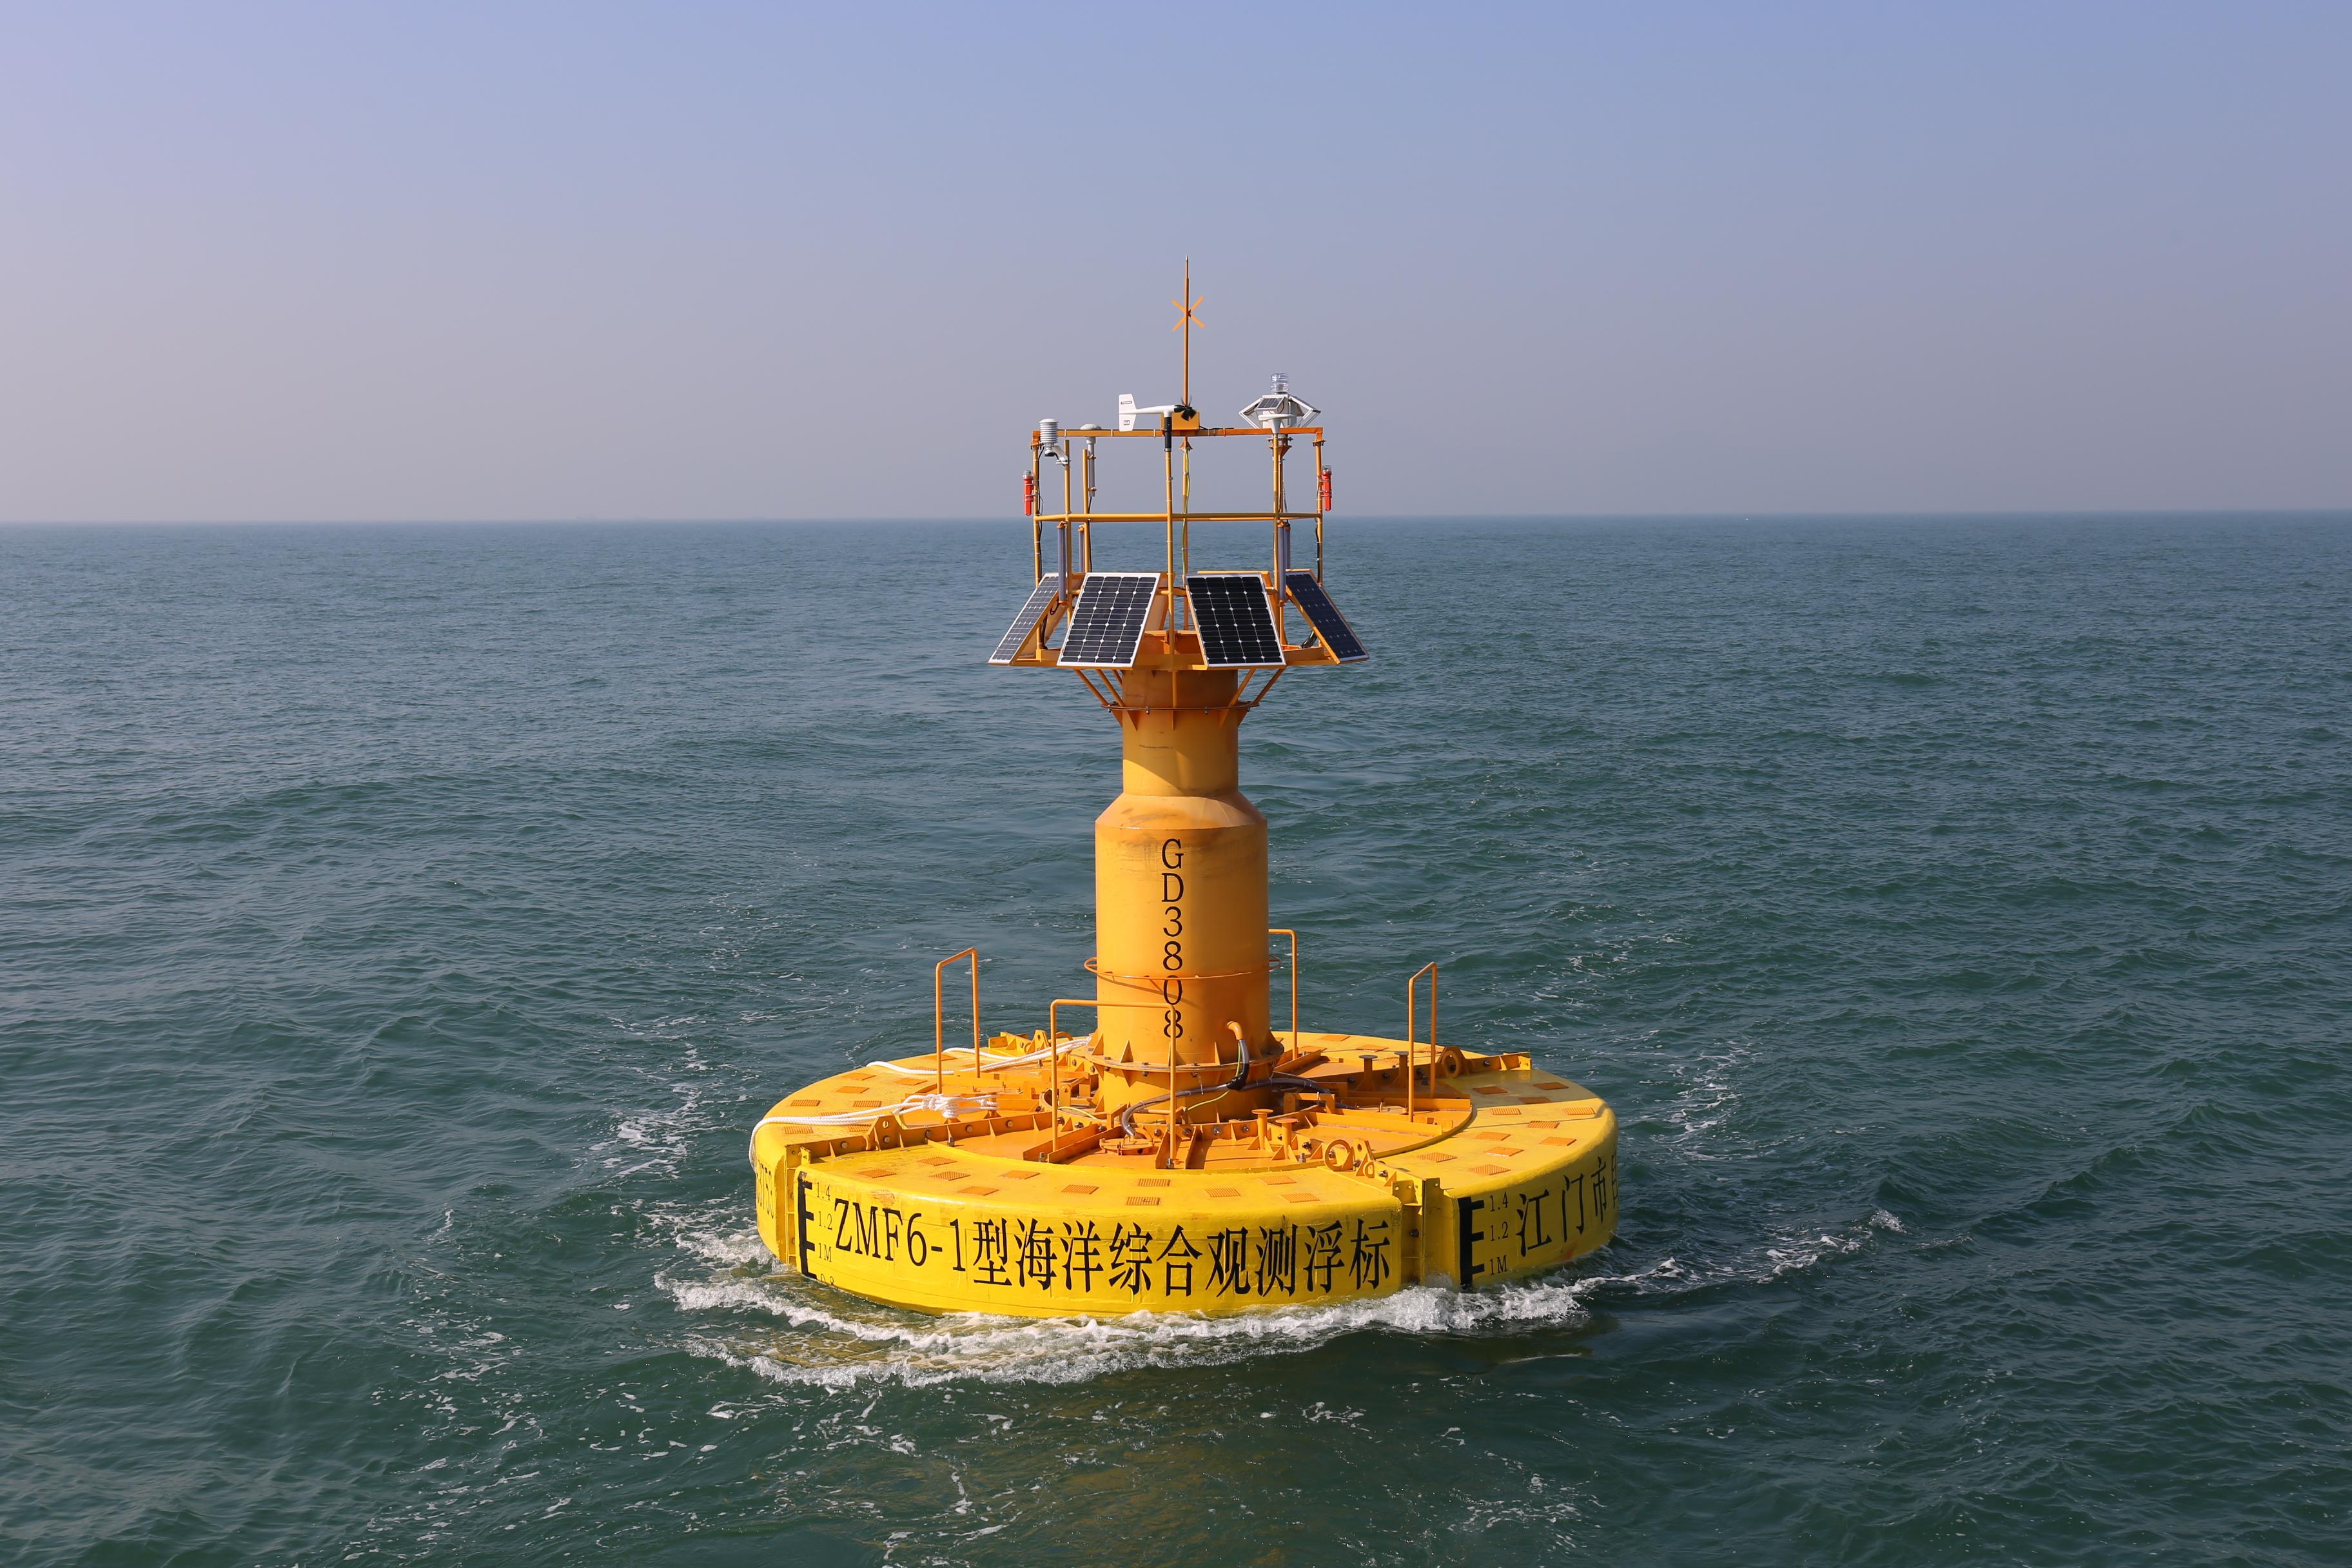 海洋浮标观测系统是一种无人值守,高度自动化,先进的海洋气象水文观测